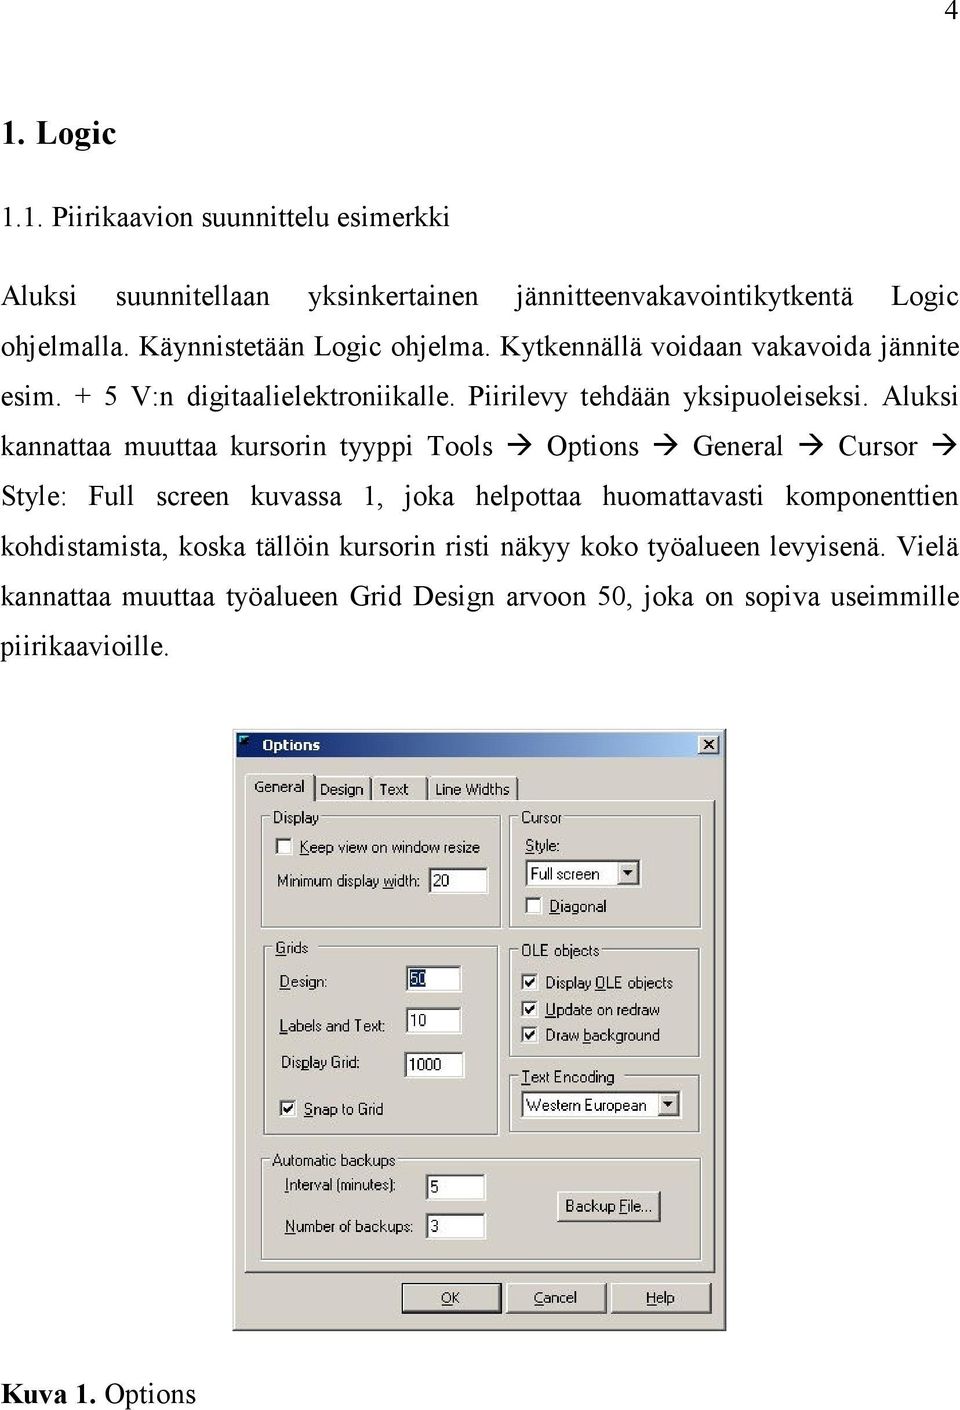 Aluksi kannattaa muuttaa kursorin tyyppi Tools Options General Cursor Style: Full screen kuvassa 1, joka helpottaa huomattavasti komponenttien